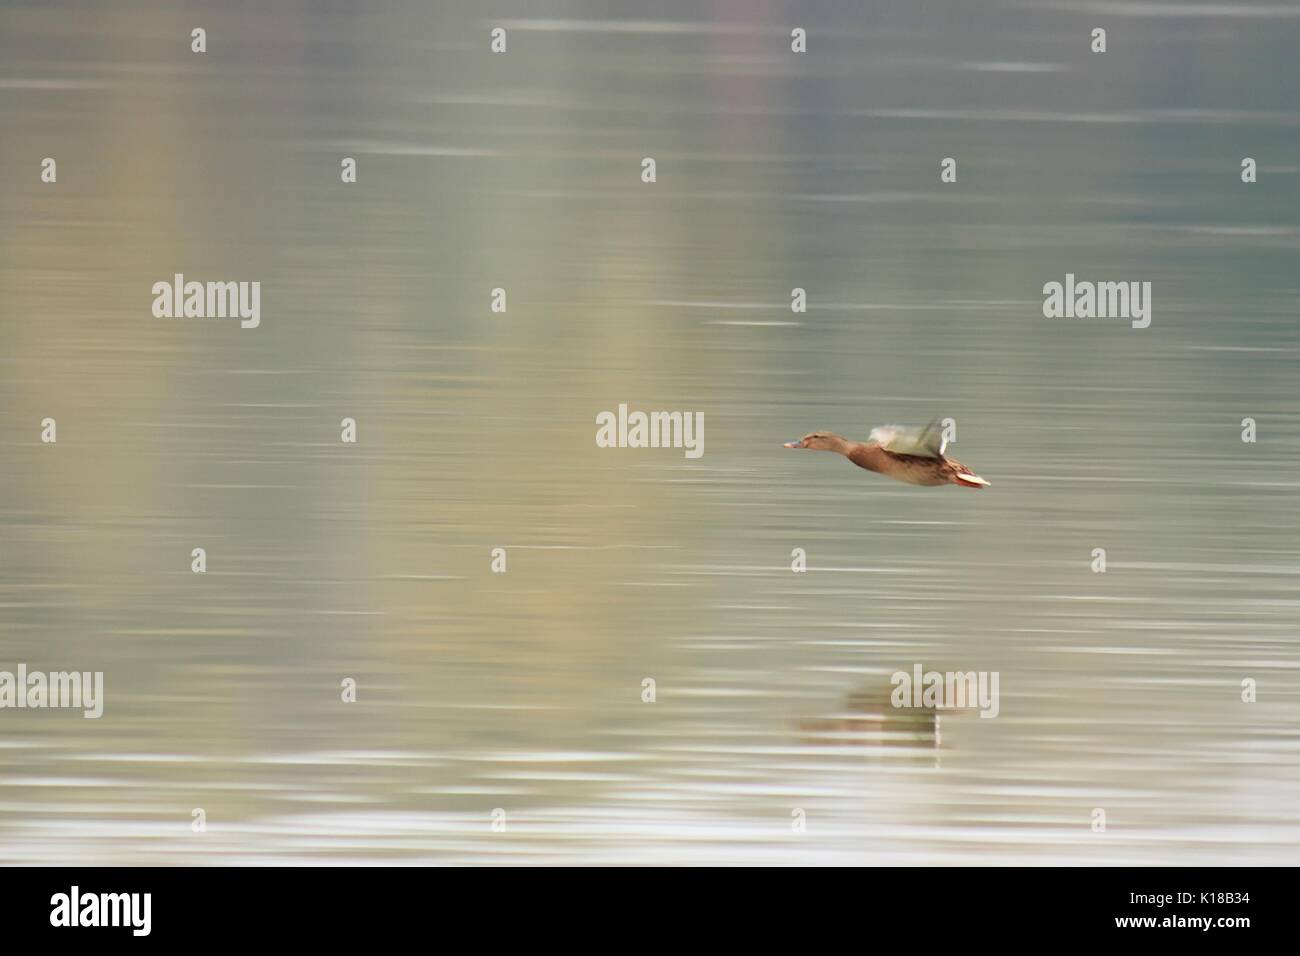 Ducks on river Danube Stock Photo